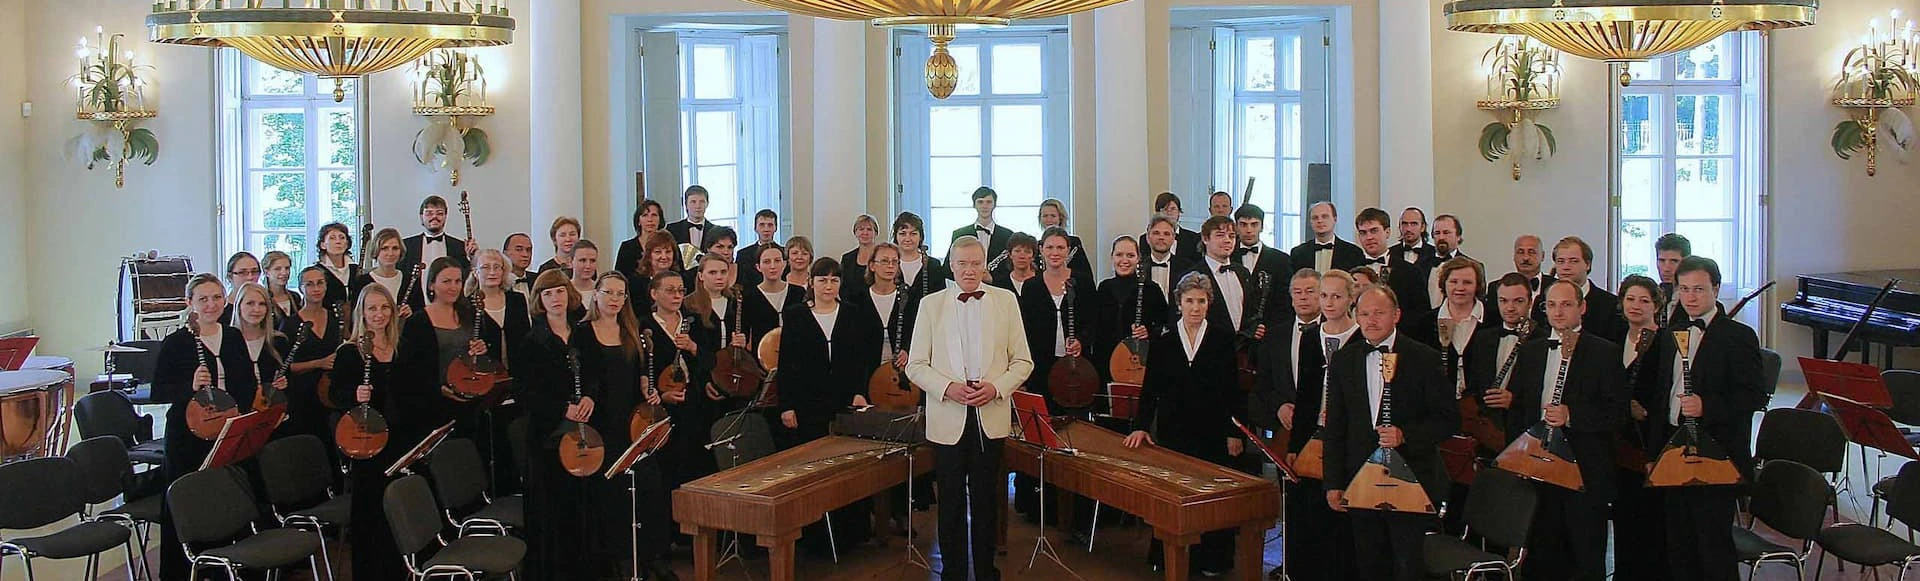 Государственный академический русский оркестр имени В.В.Андреева